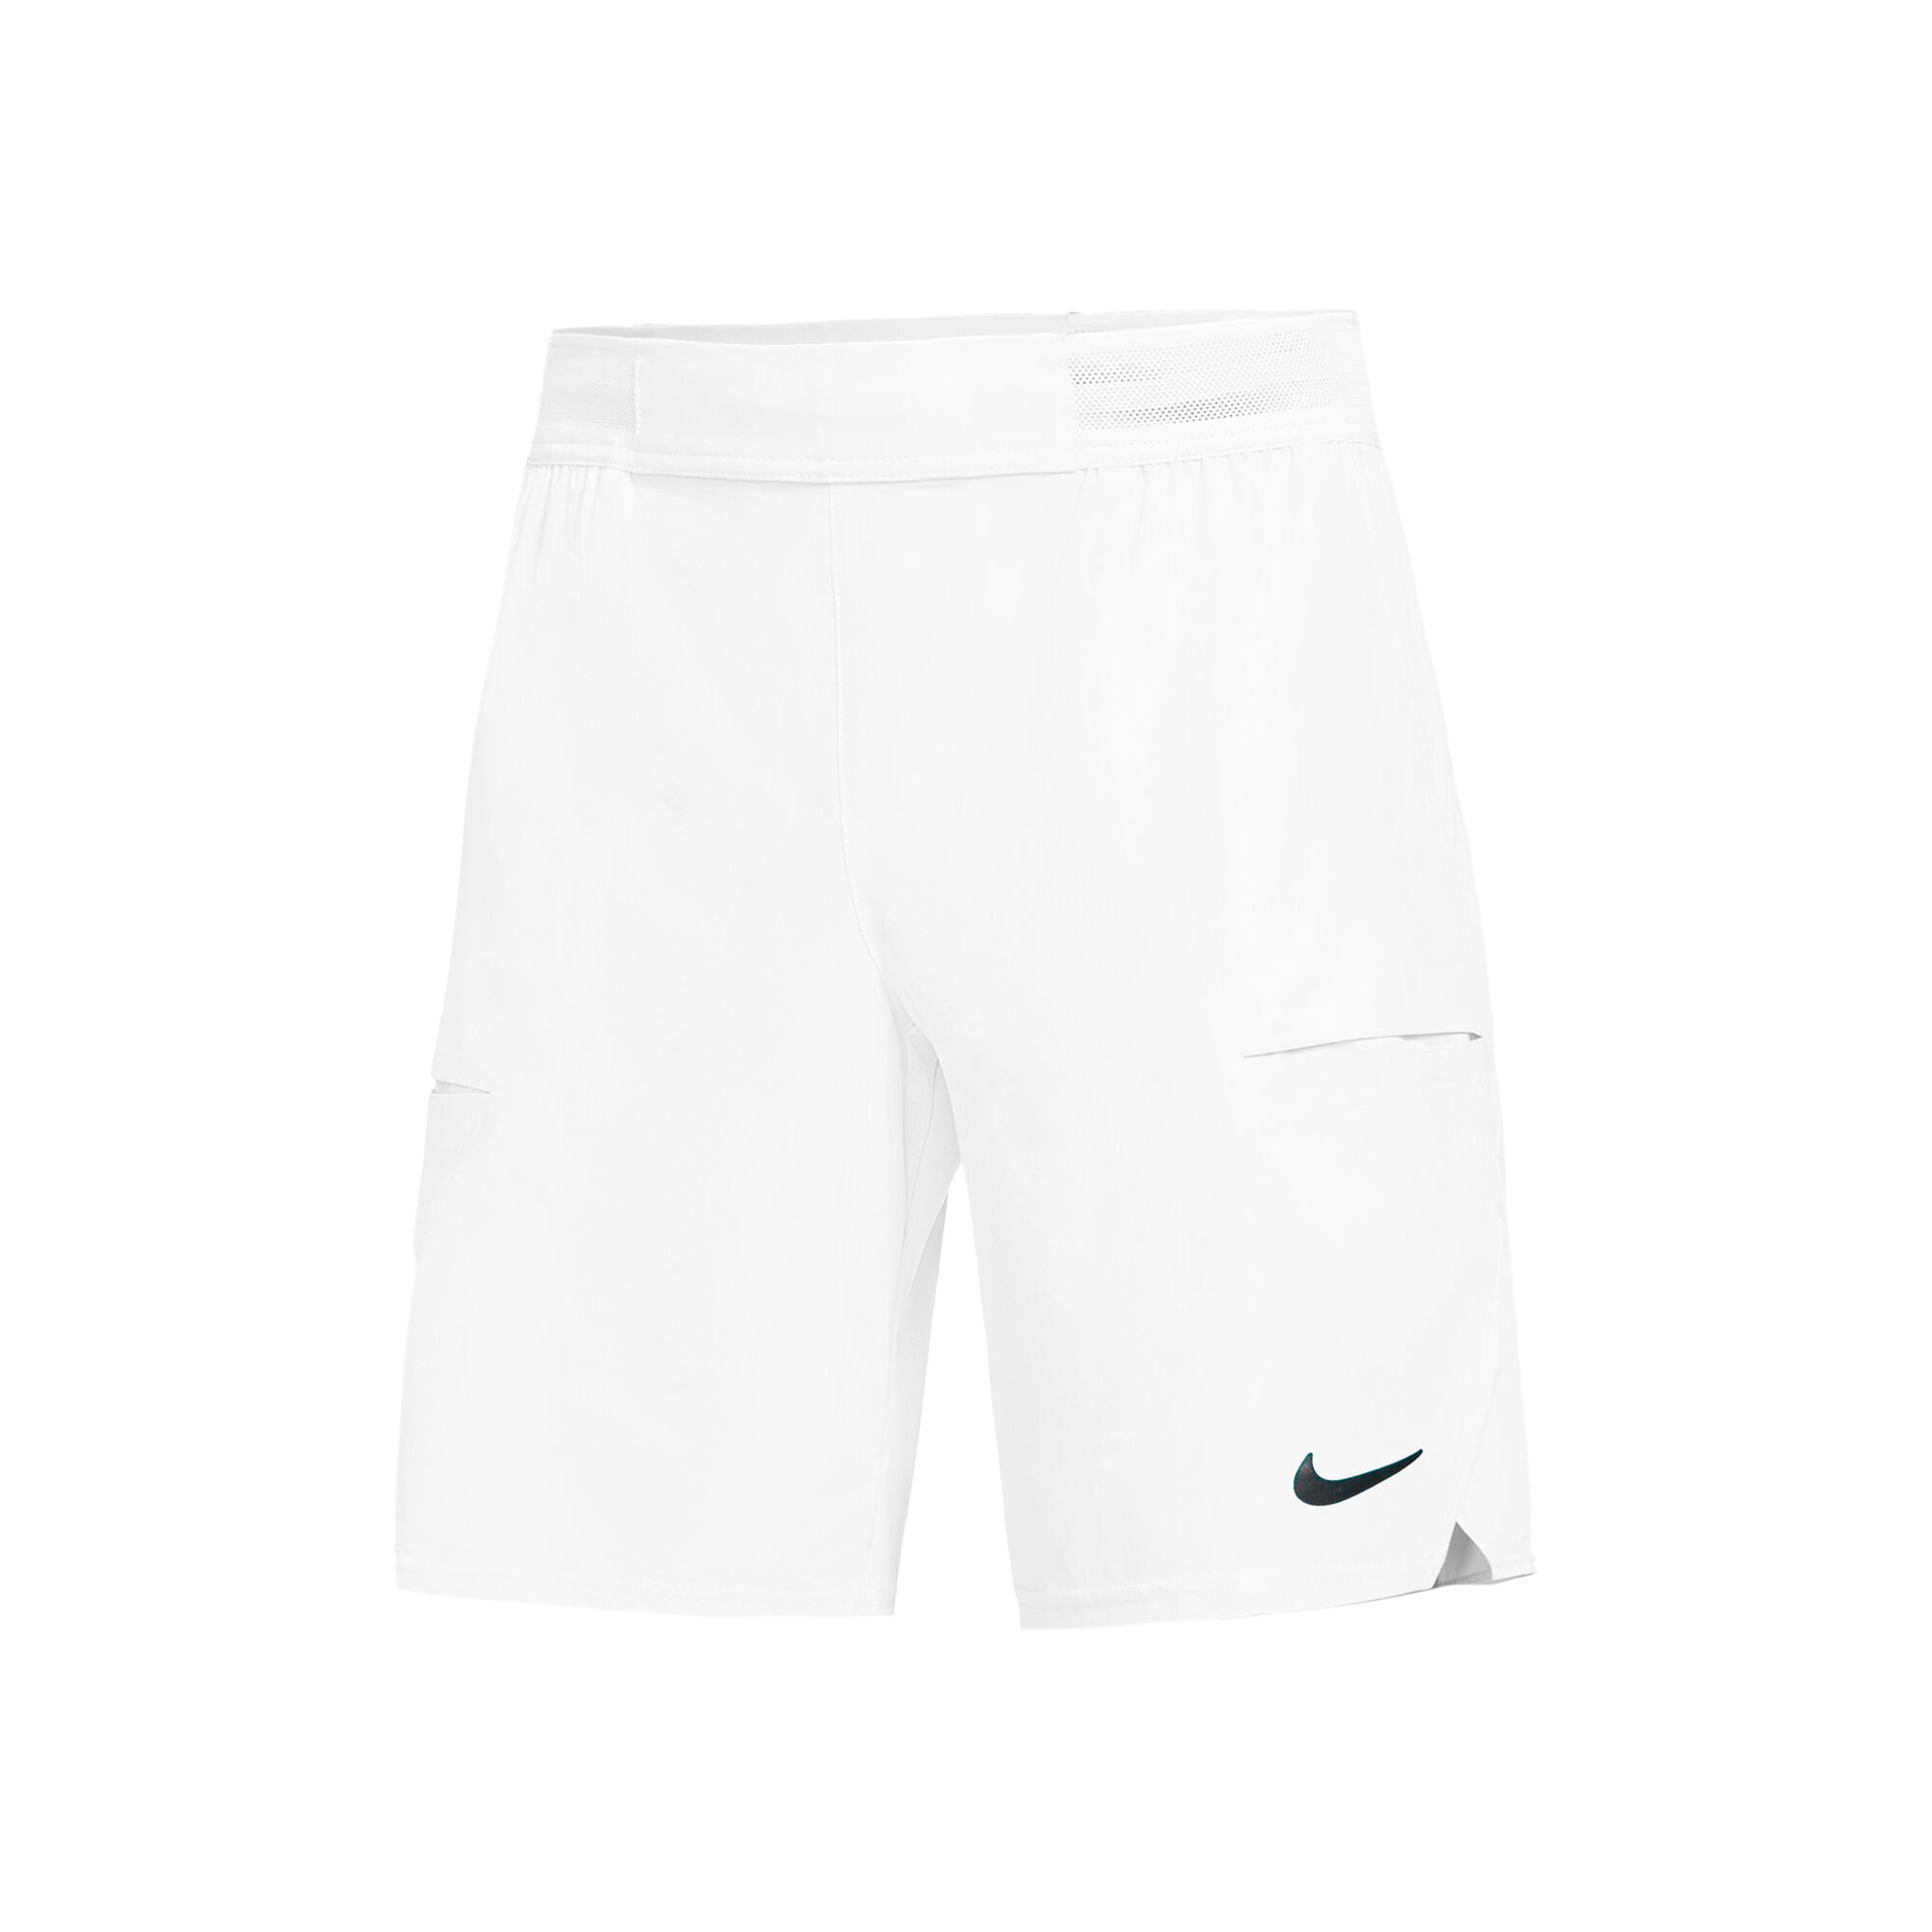 Desfiladero Dejar abajo Persistente Nike Court Dri-Fit Advantage 9in Shorts Hombres - Blanco compra online |  Tennis-Point